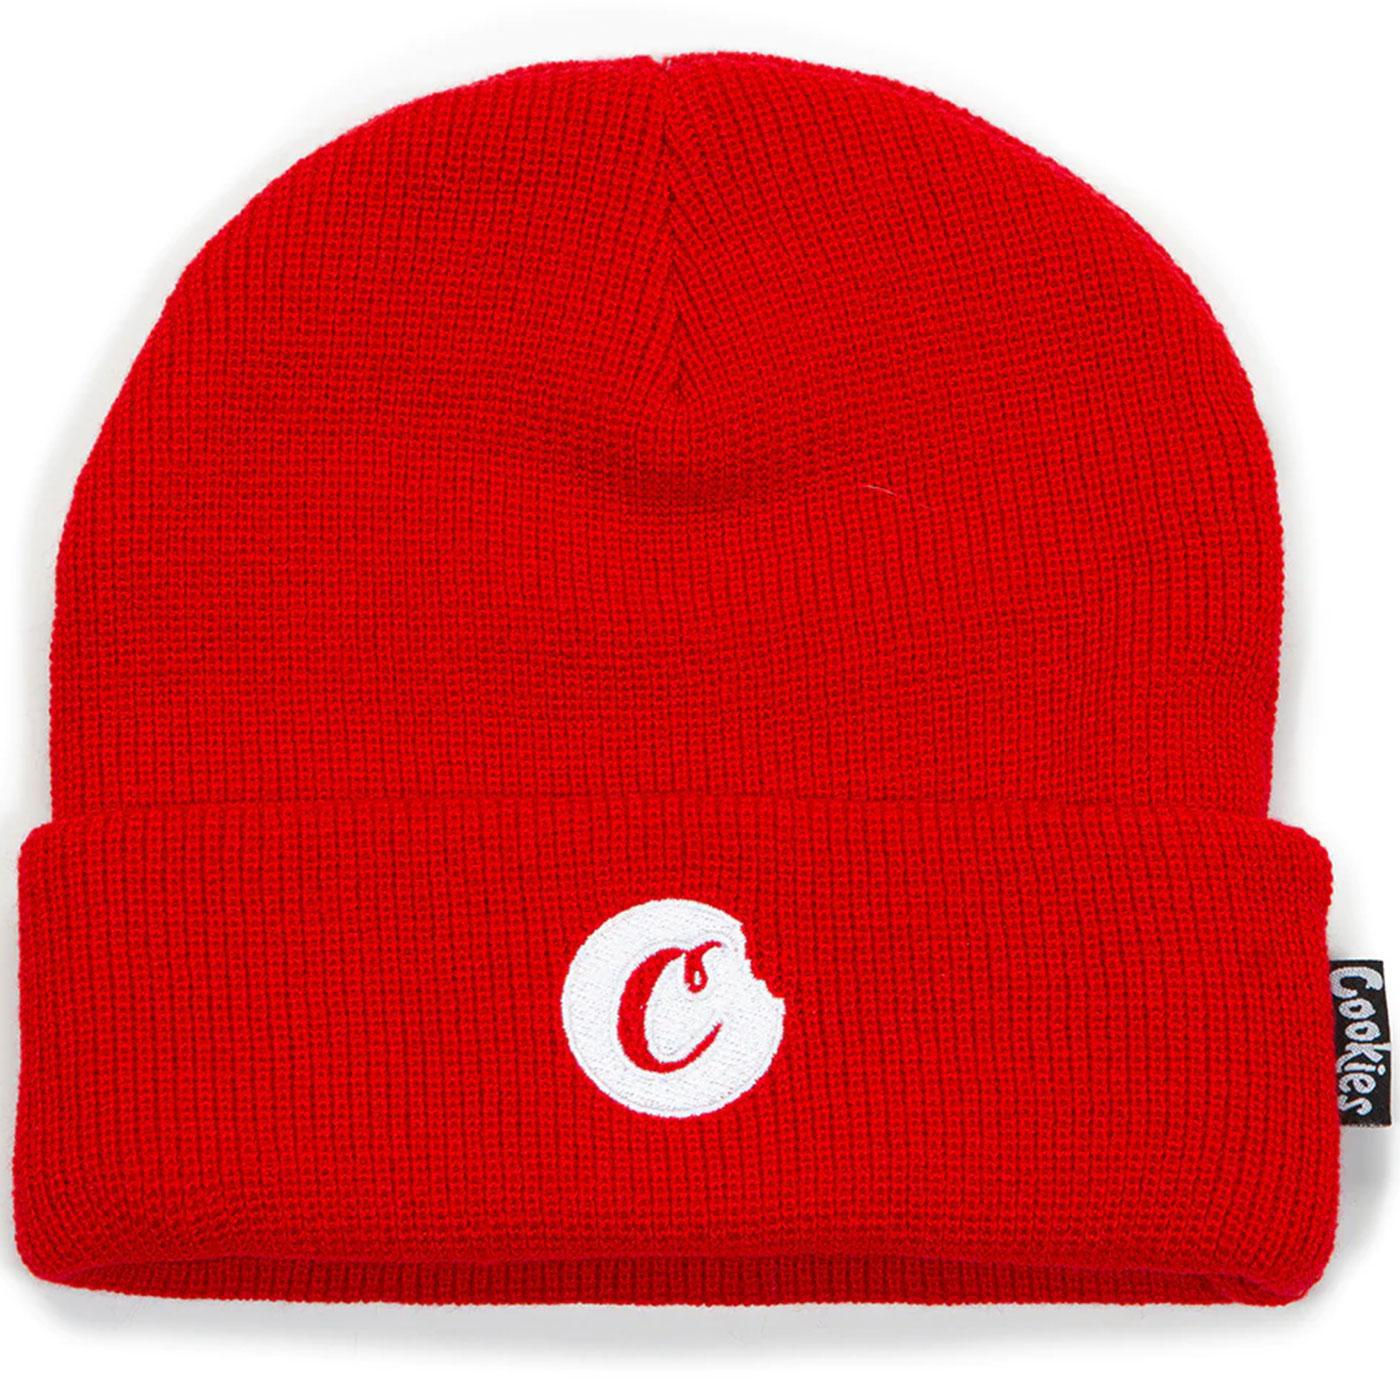 C-Bite Knit Beanie (Red/White) – Urban Street Wear